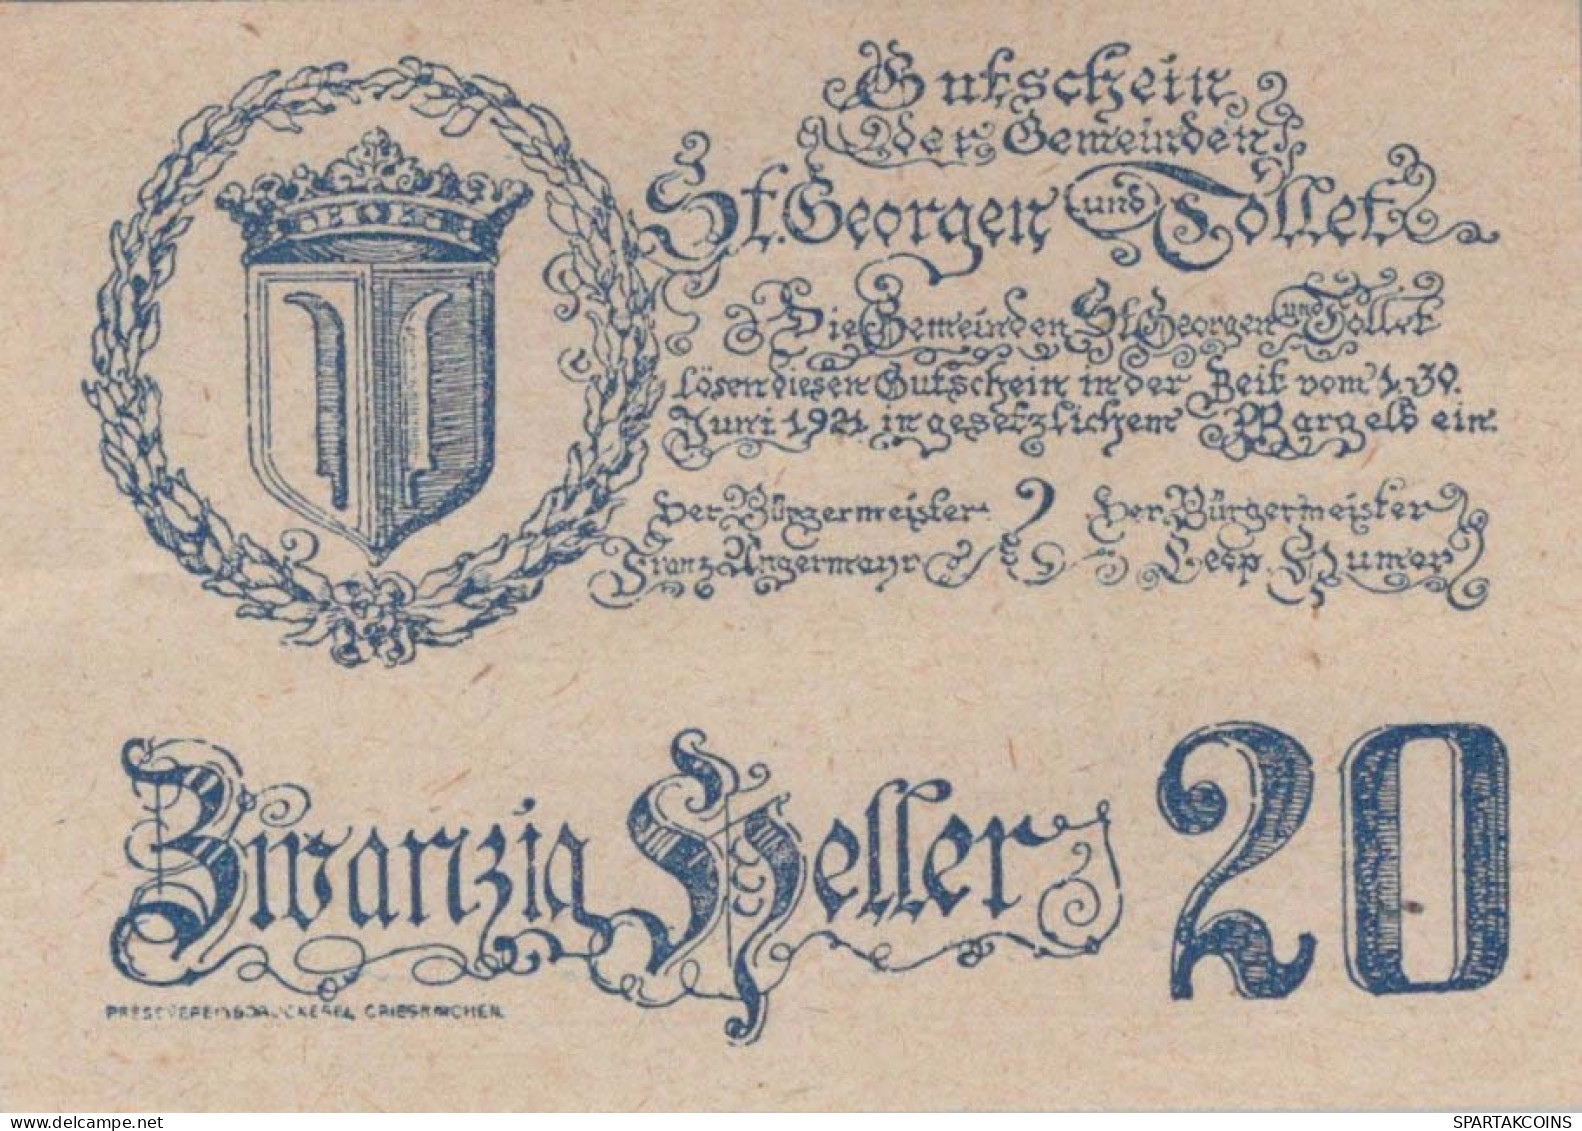 20 HELLER 1921 SANKT GEORGEN BEI GRIESKIRCHEN AND TOLLET Oberösterreich Österreich #PF044 - Lokale Ausgaben